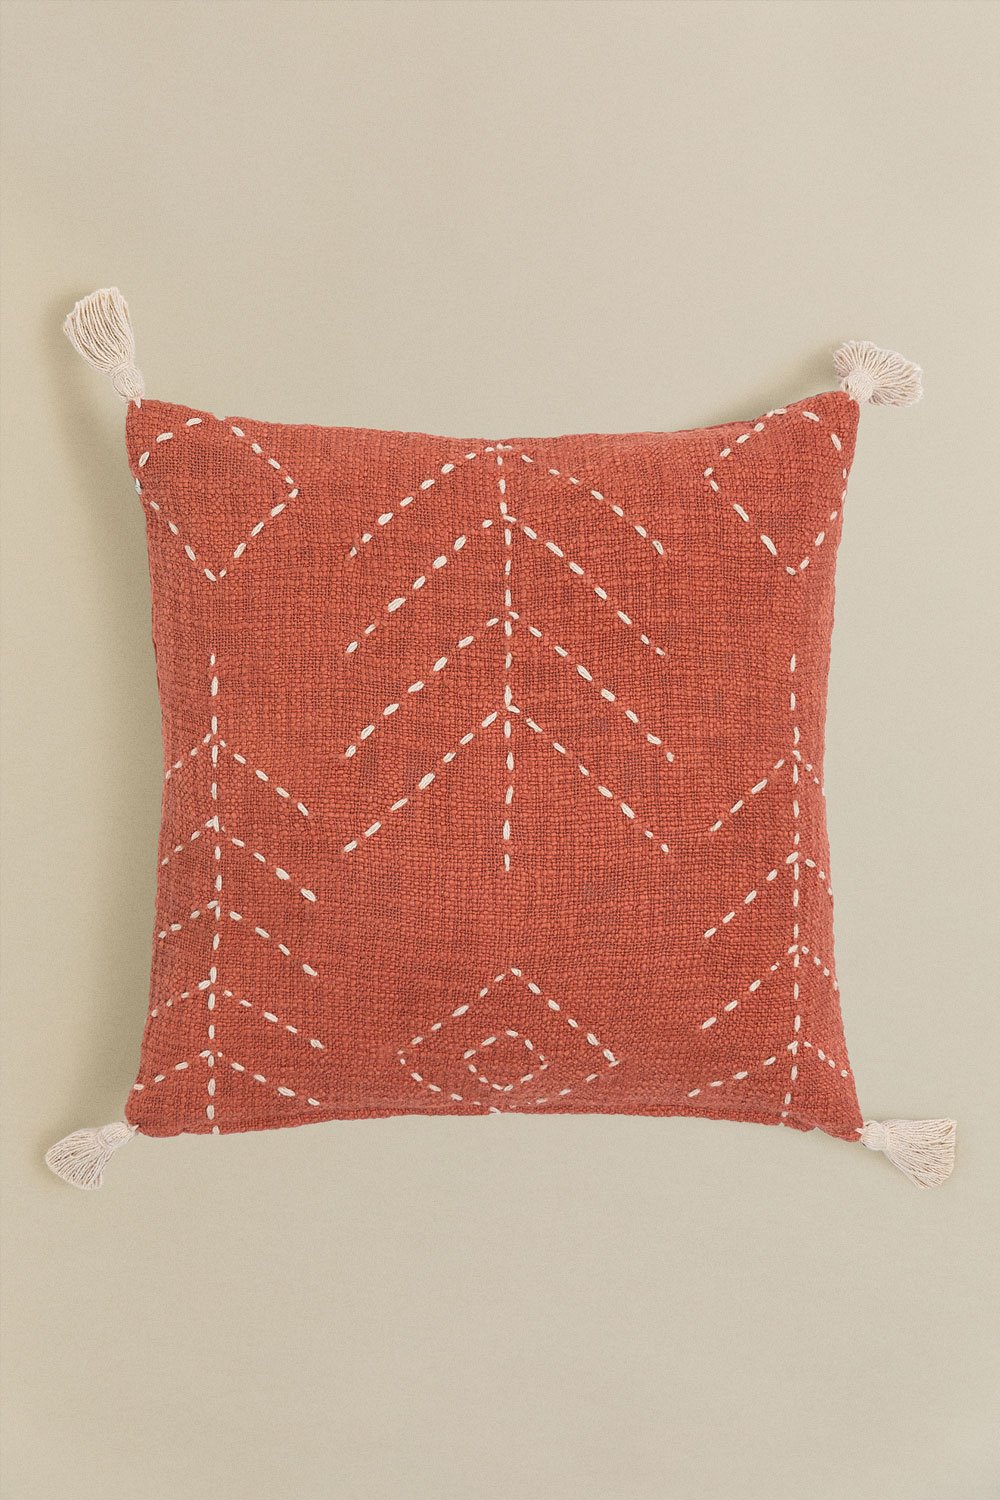 Kwadratowa poduszka z bawełny (40x40 cm) Lemes, obrazek w galerii 1